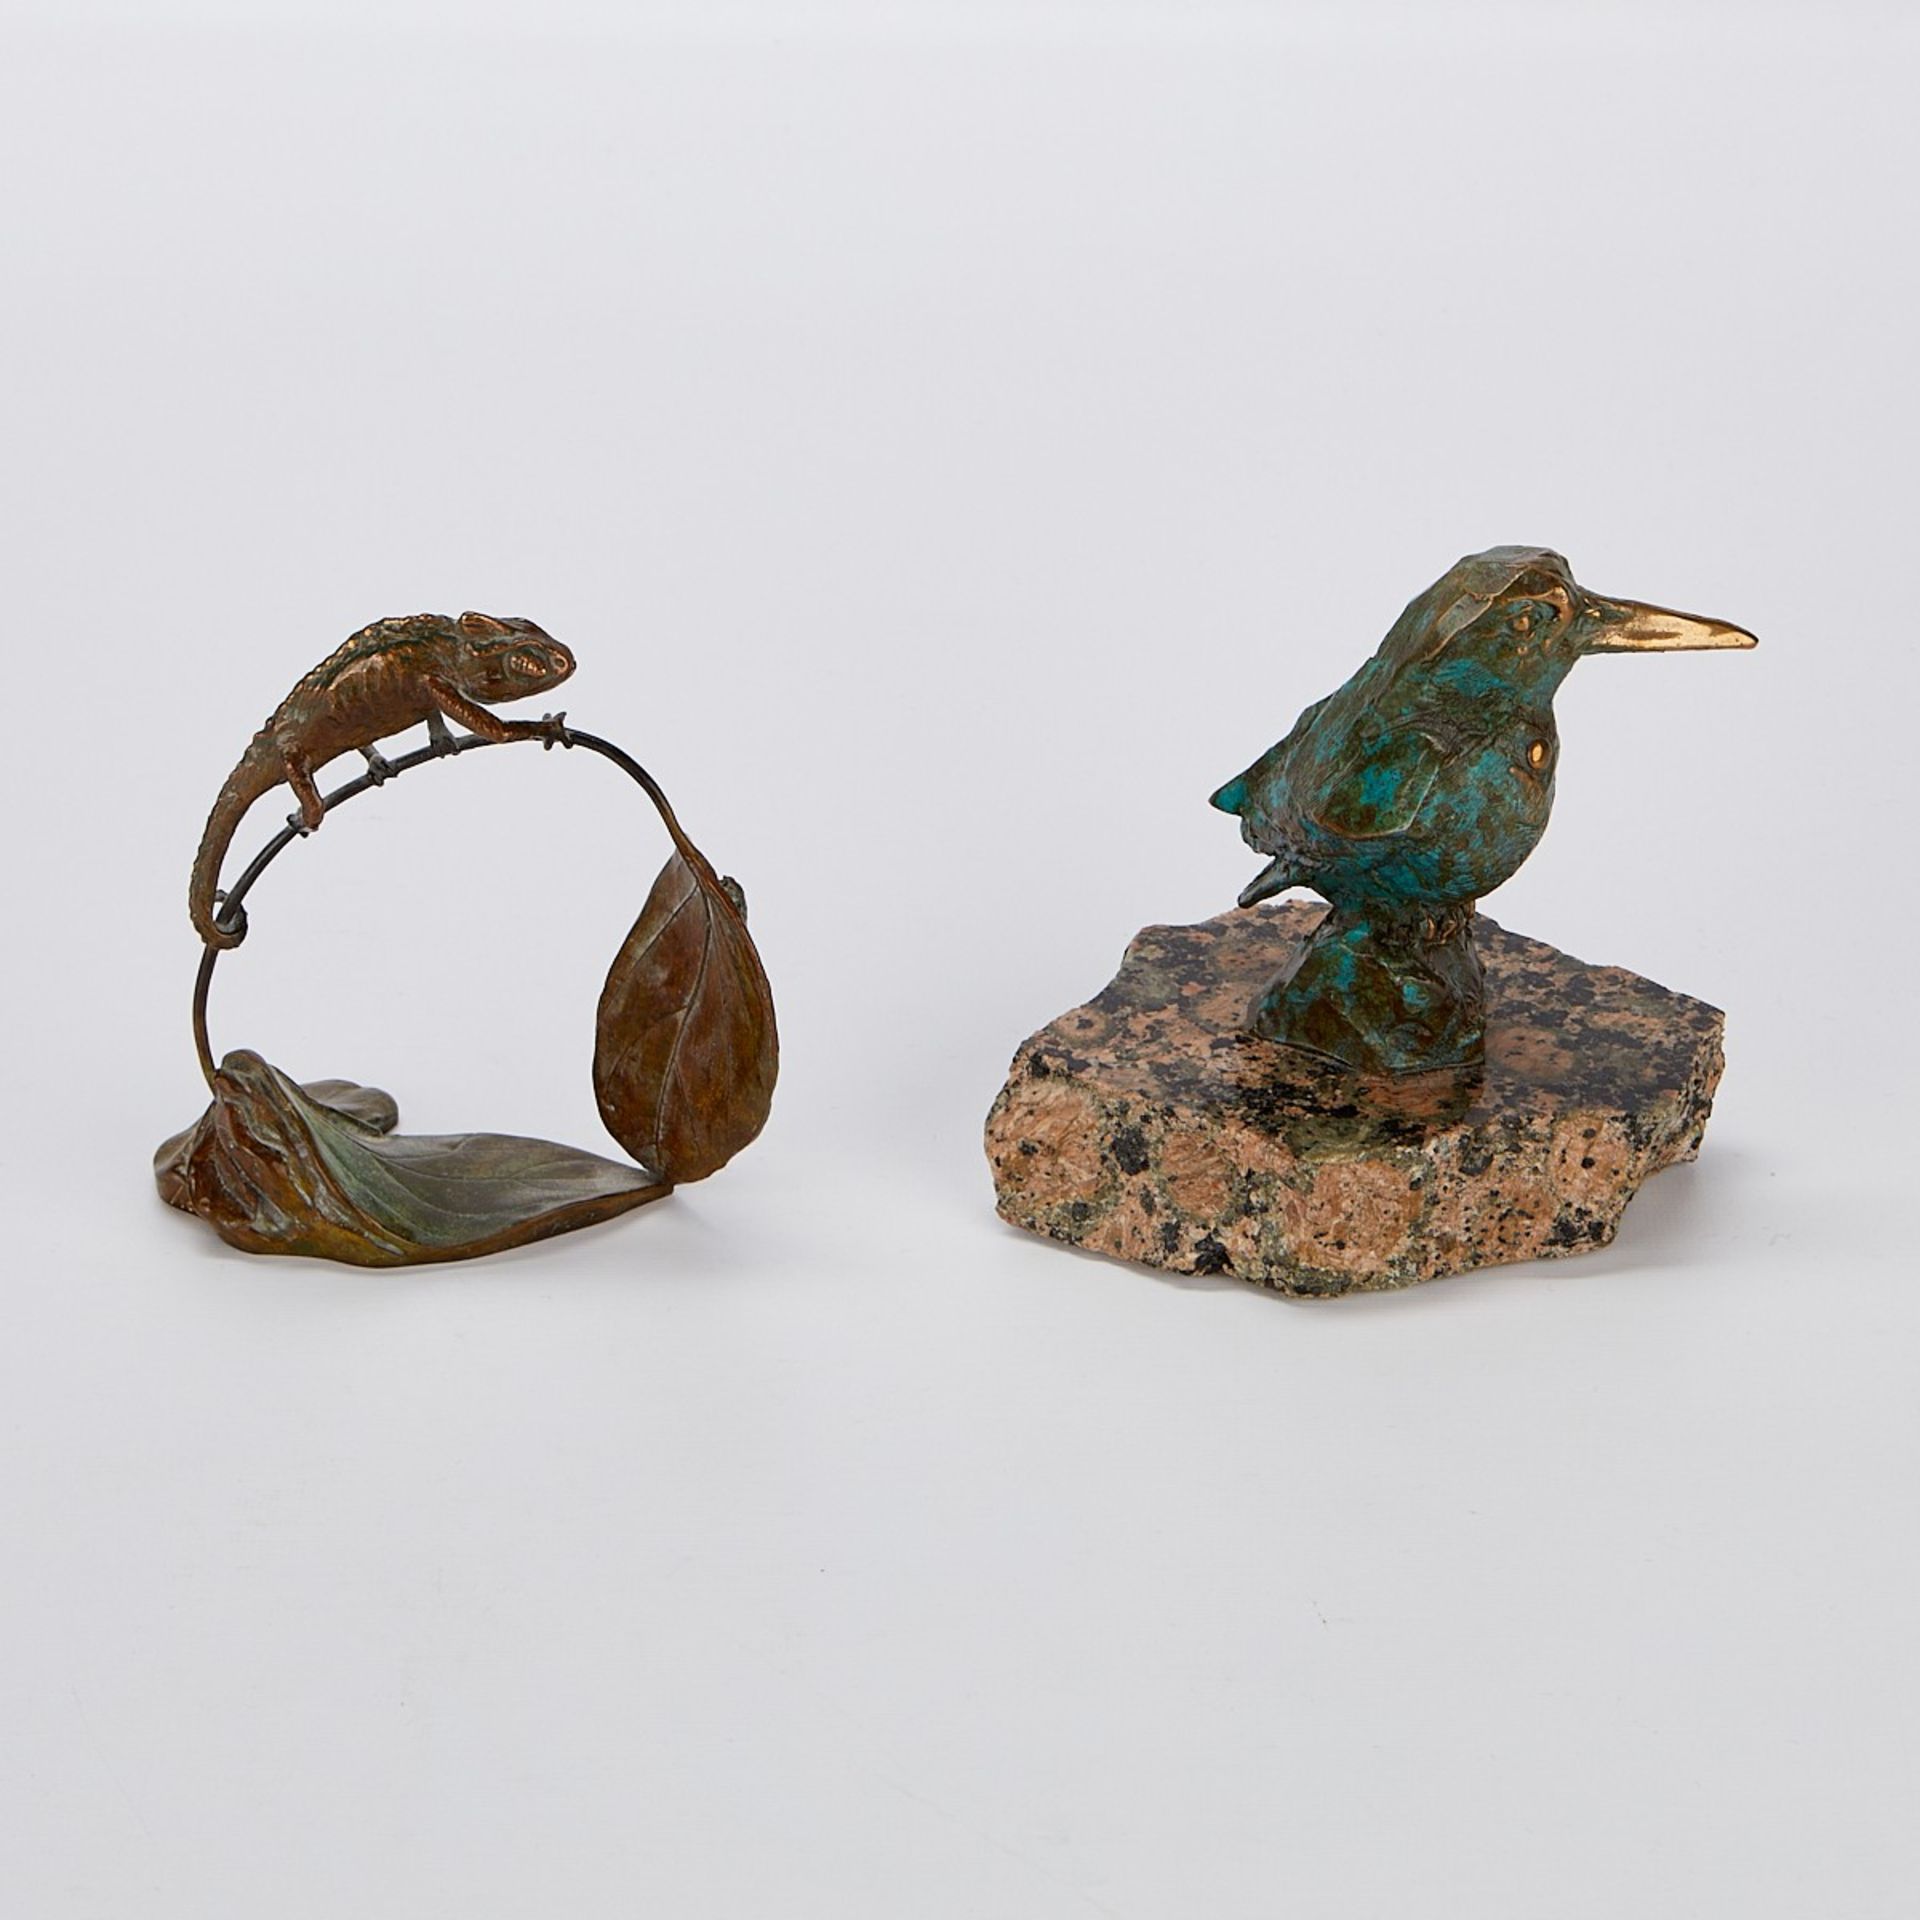 2 Bronze Sculptures - Bird & Chameleon - Image 7 of 13